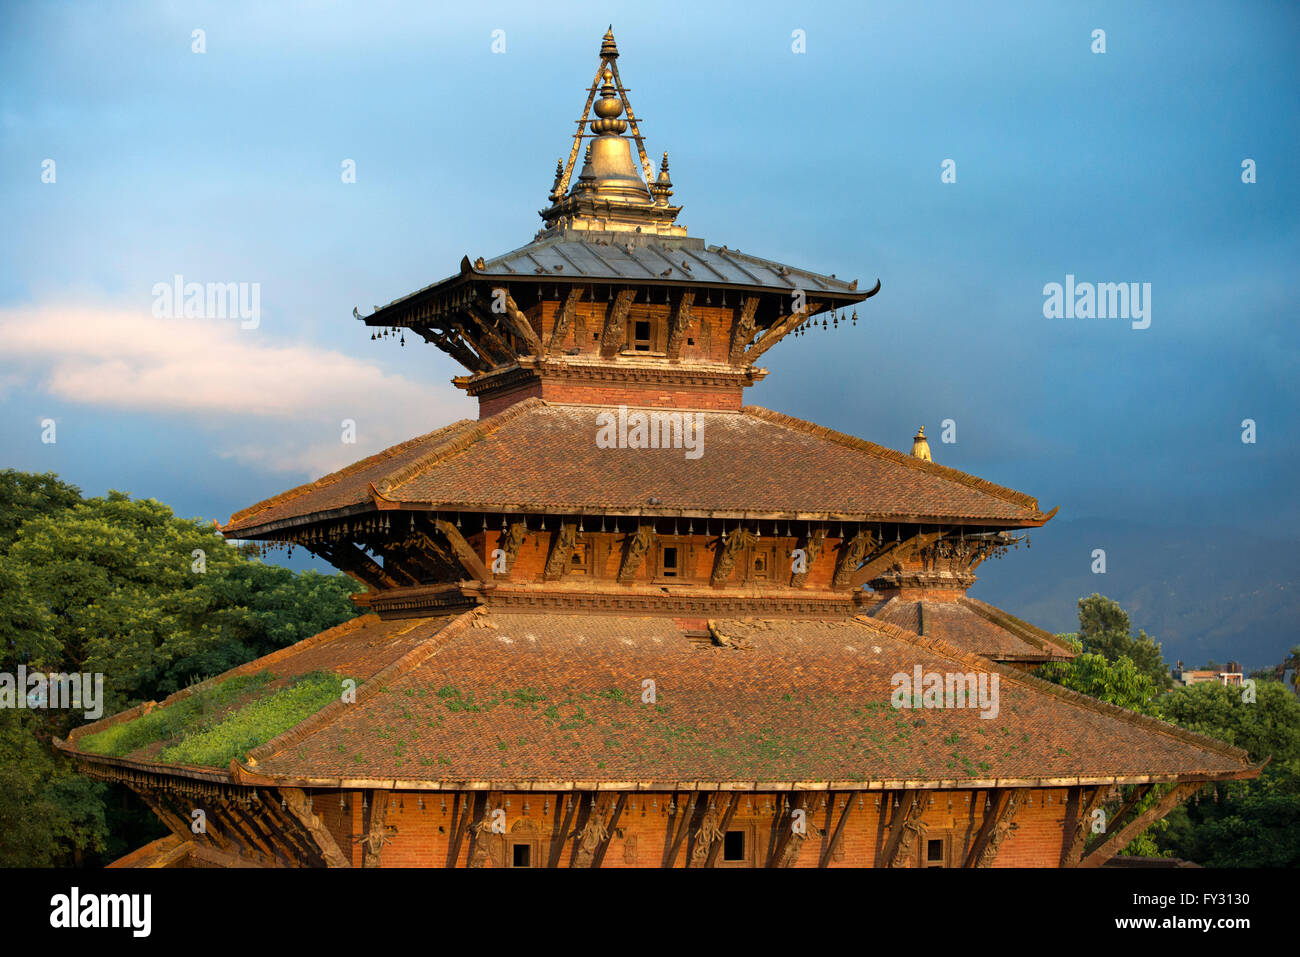 L'un des bâtiments du Palais Royal situé à Patan Durbar Square, Katmandou, Népal. Banque D'Images